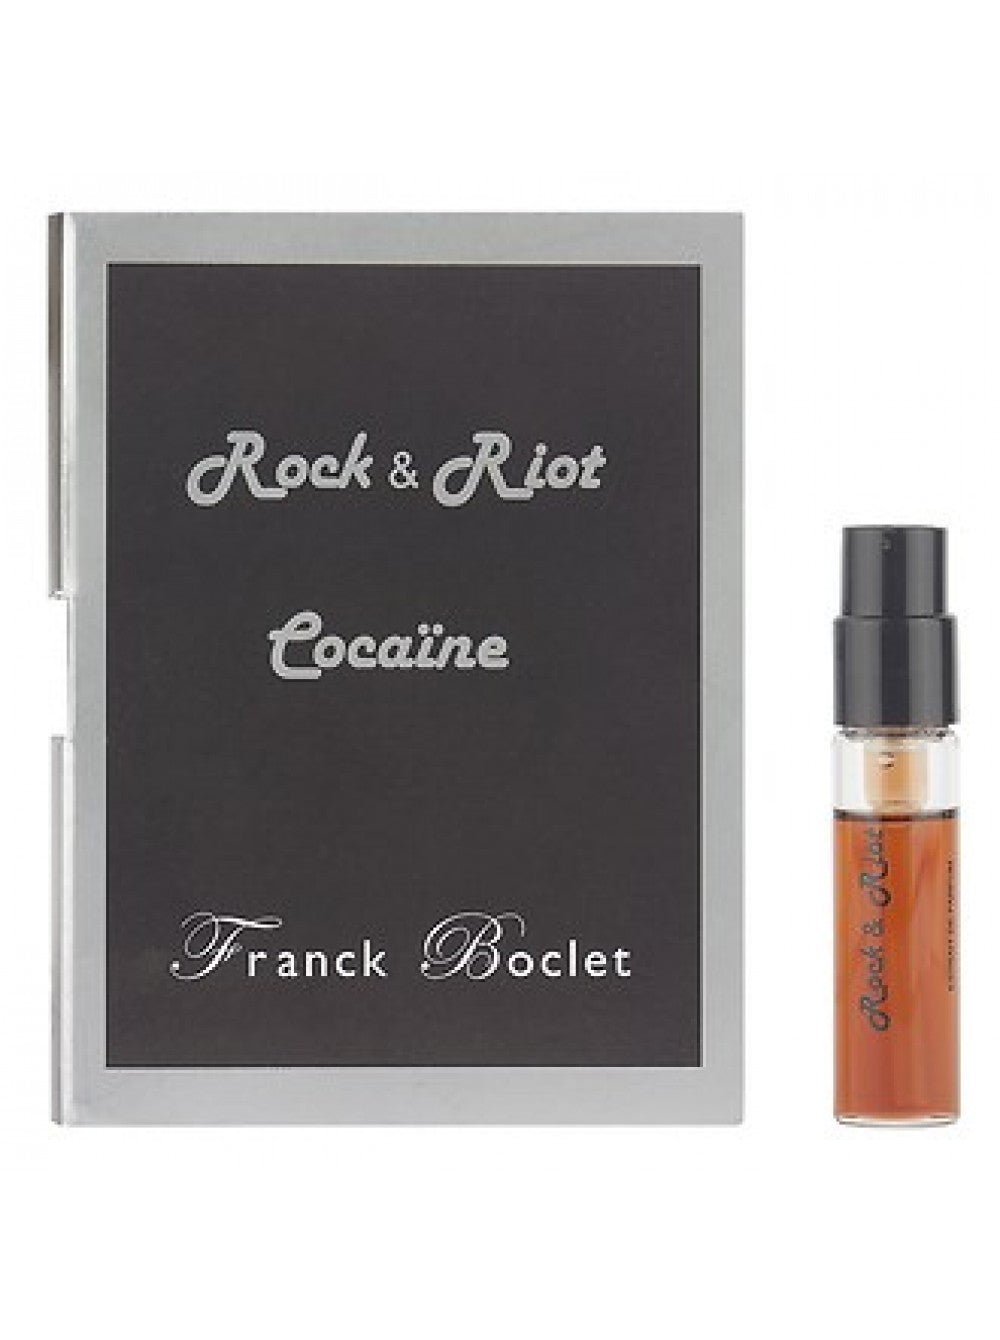 Franck Boclet Cocaine official scent sample 1.5ml 0.05 fl. o.z.